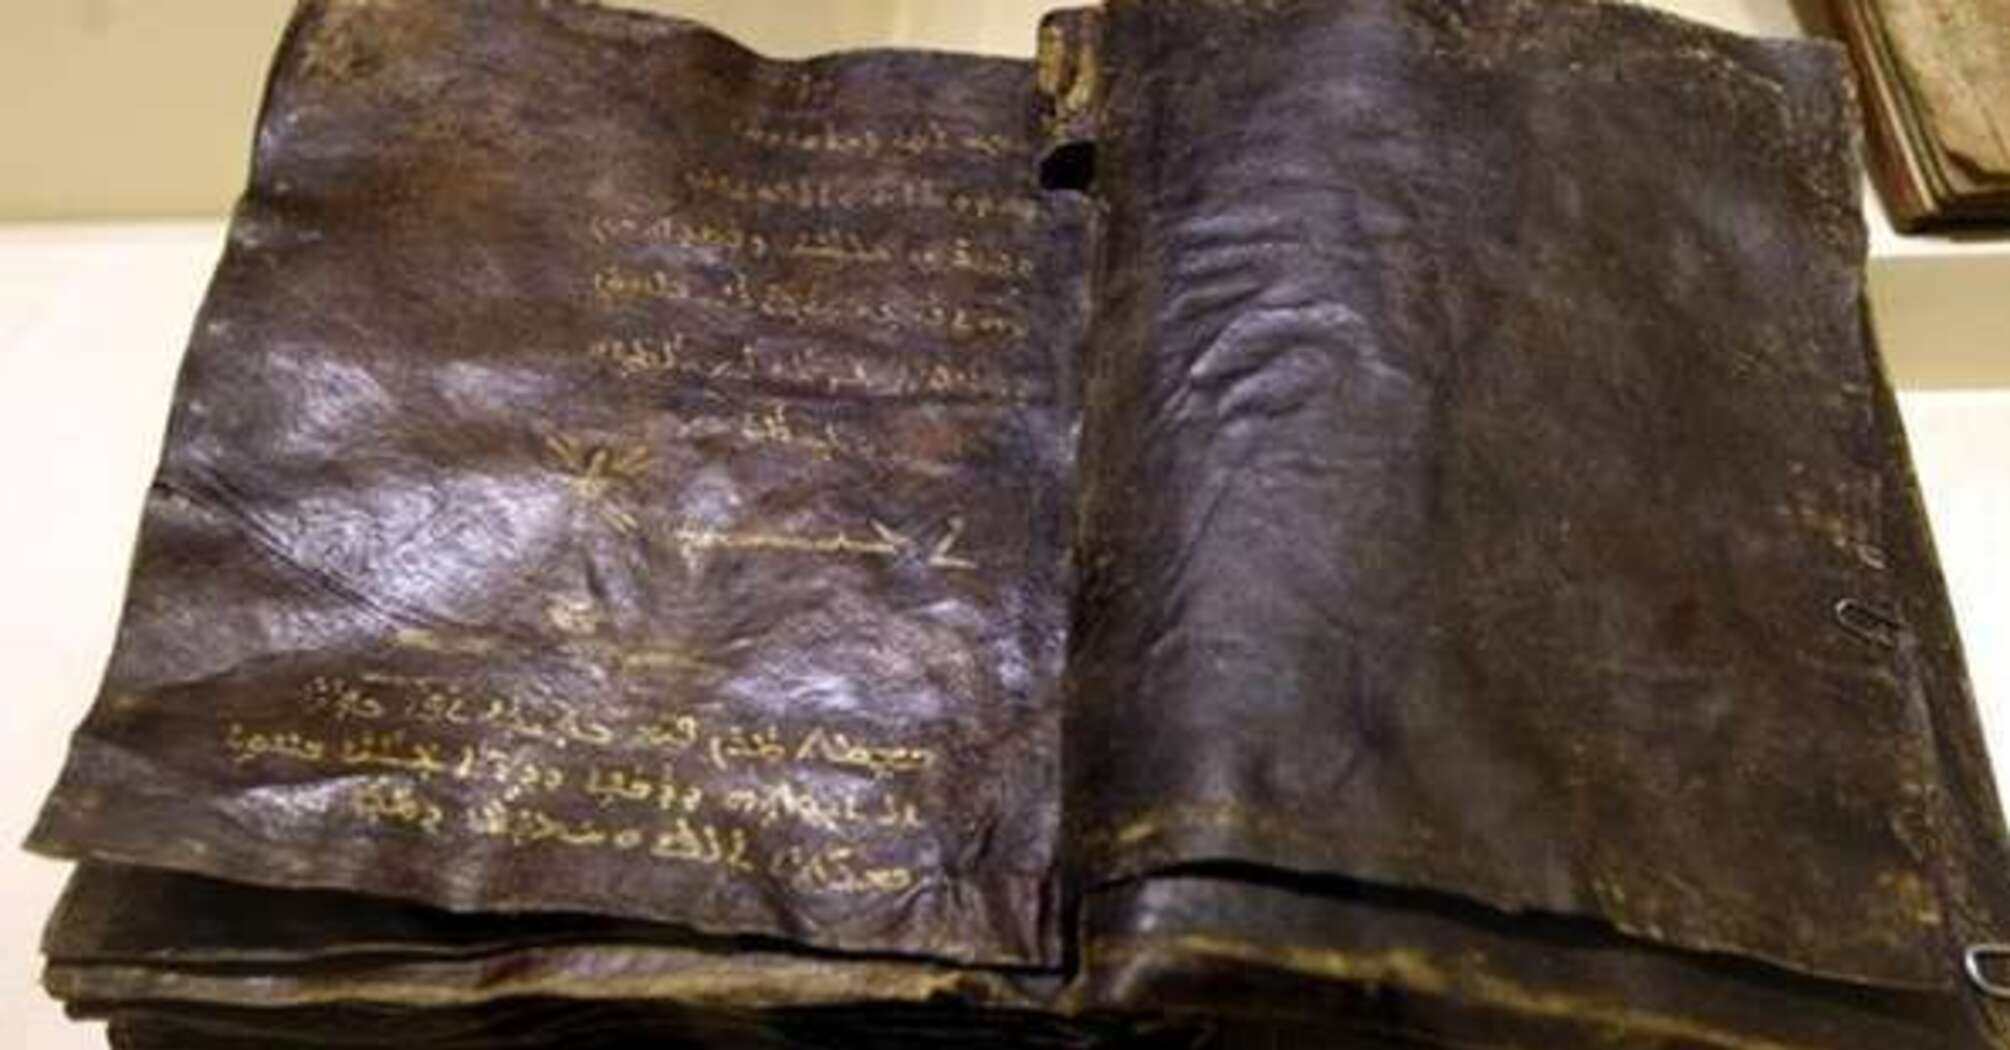 Книга 1500 года. Библия в этнографическом музее Анкары. Самая древняя Библия. Пергамент из кожи. Самая старинная книга.